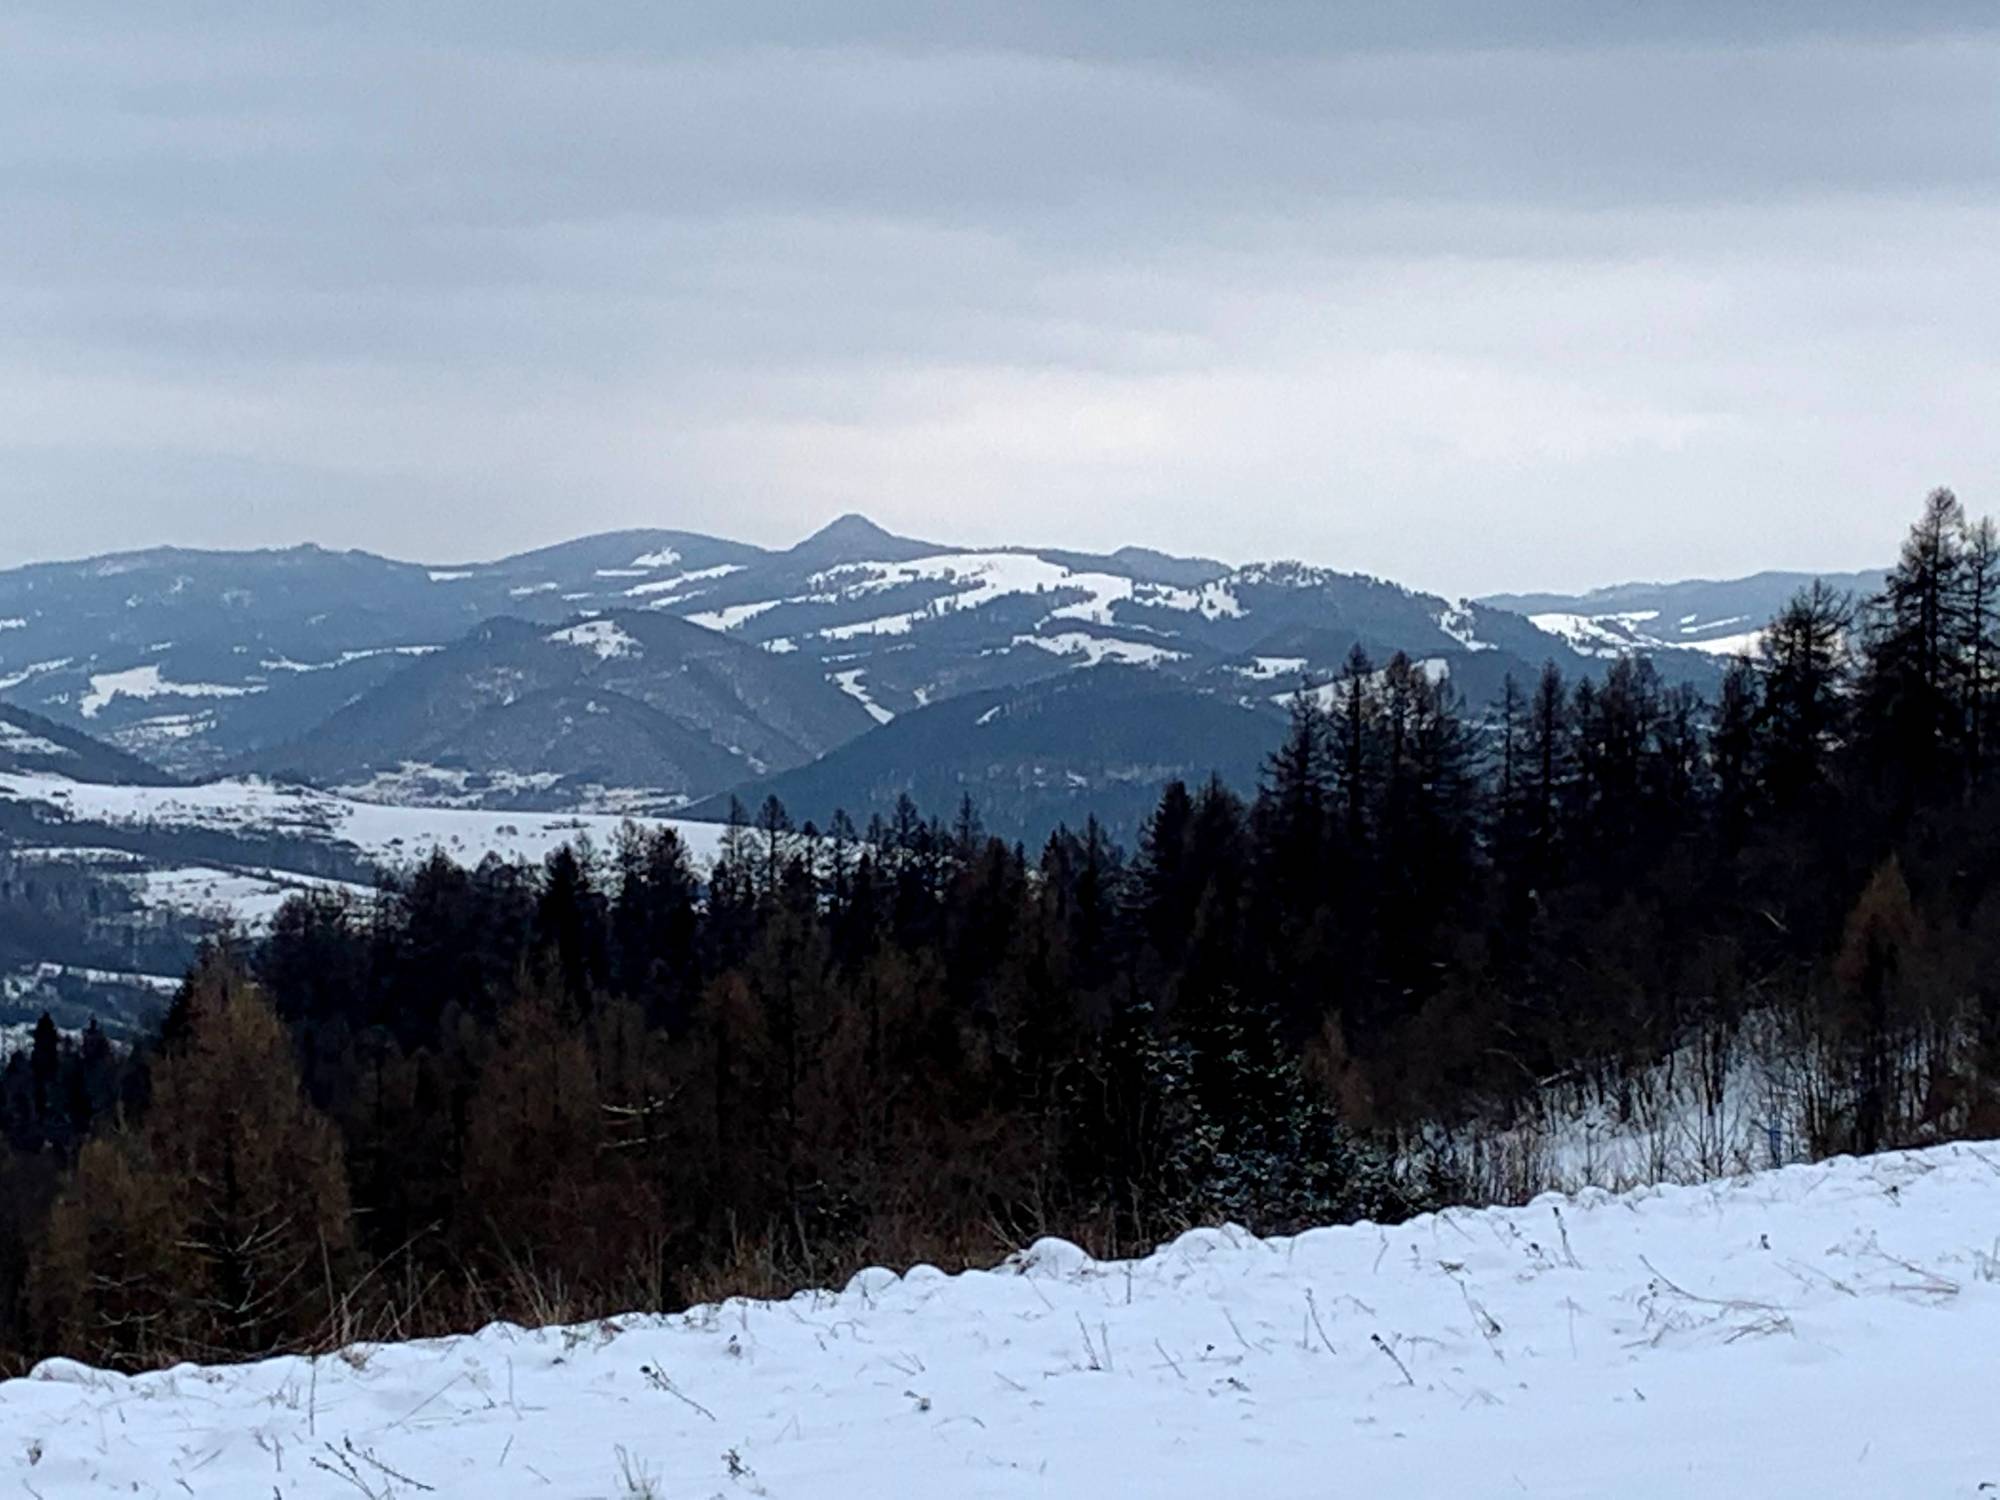 Widok z szlaku z Lubania do Krościenka. Szczyt w centralnej części to Wysoka.